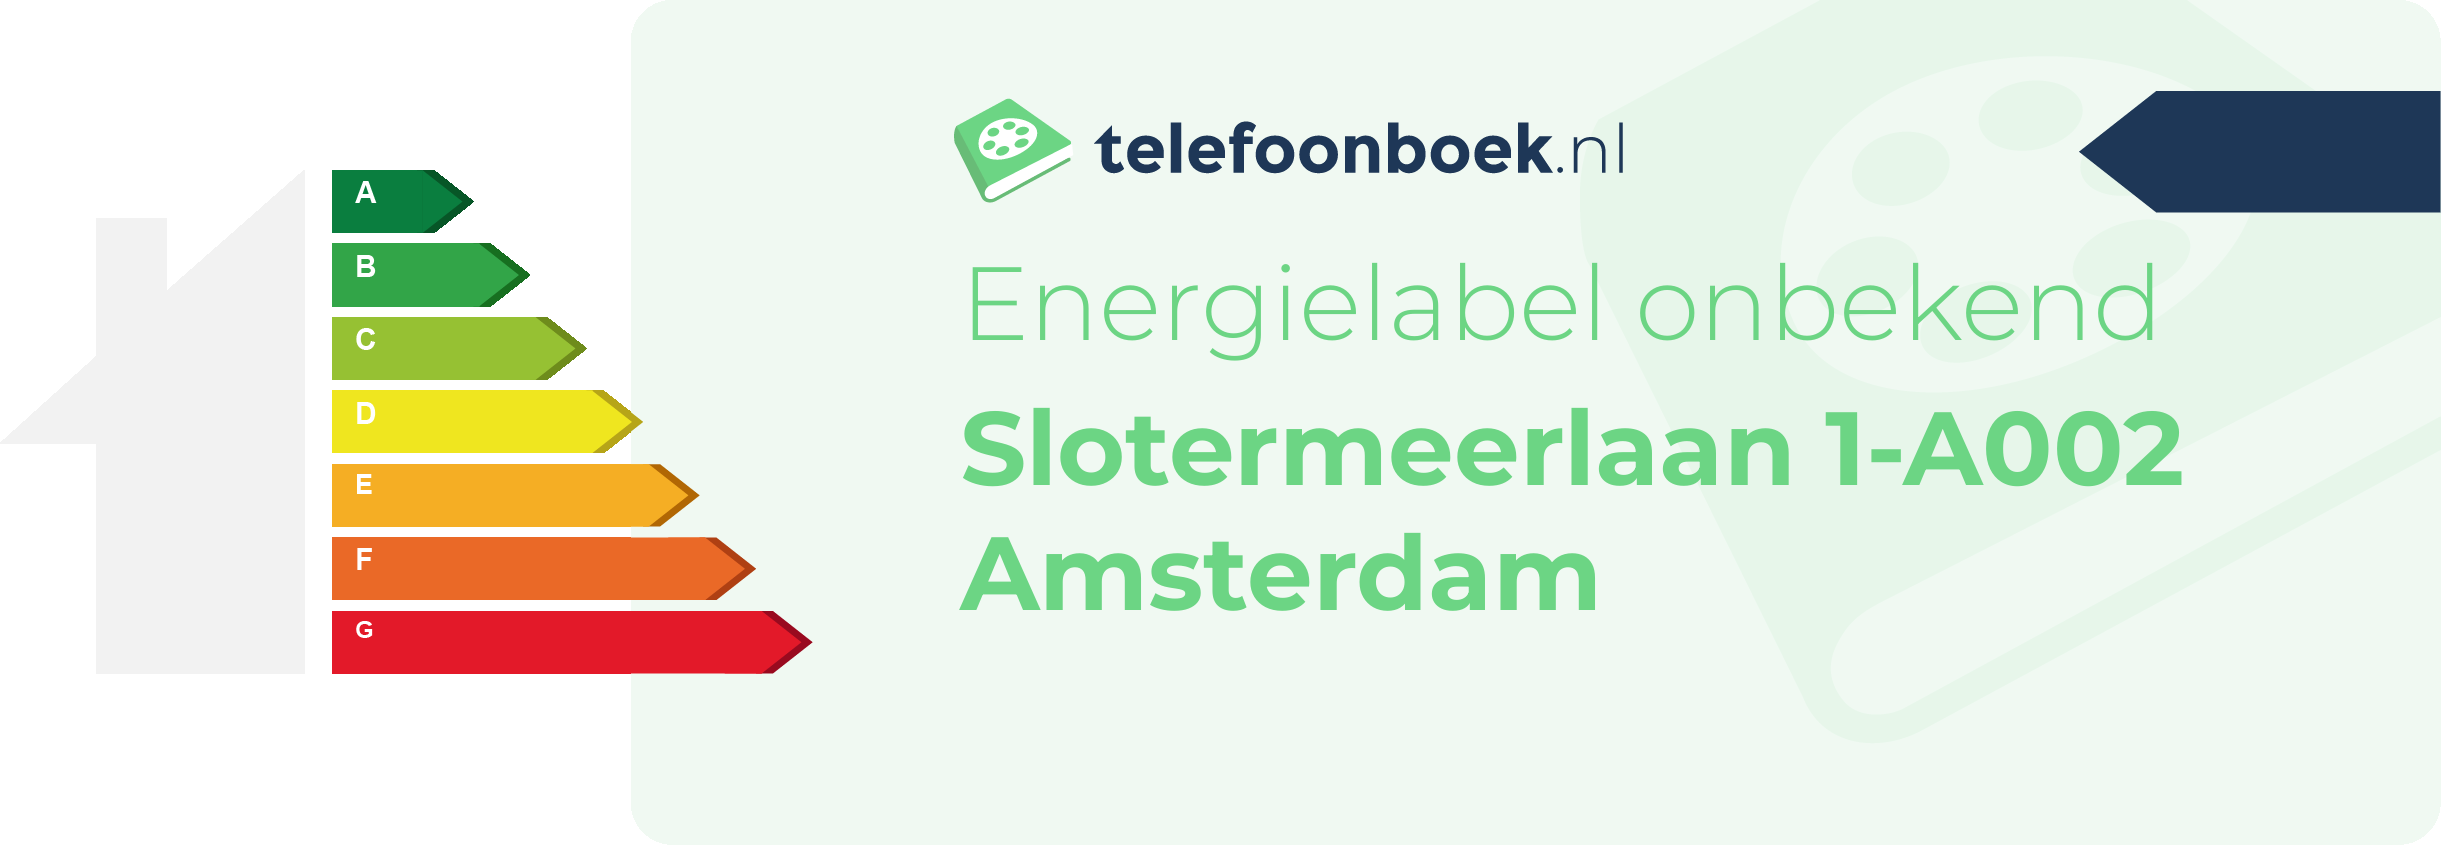 Energielabel Slotermeerlaan 1-A002 Amsterdam